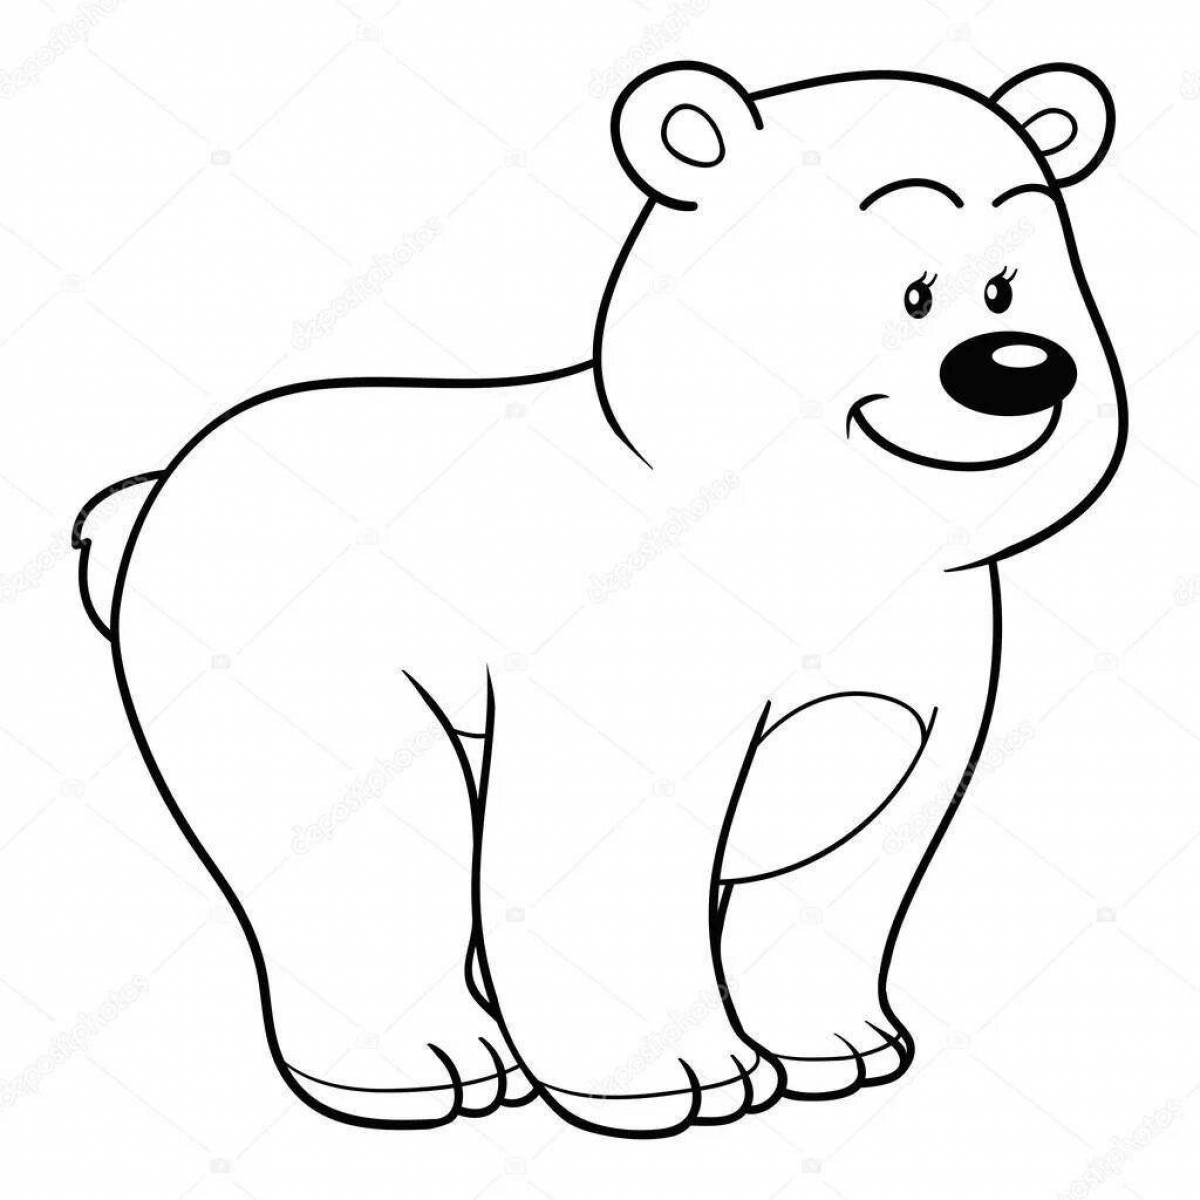 Coloring book joyful polar bear for children 3-4 years old